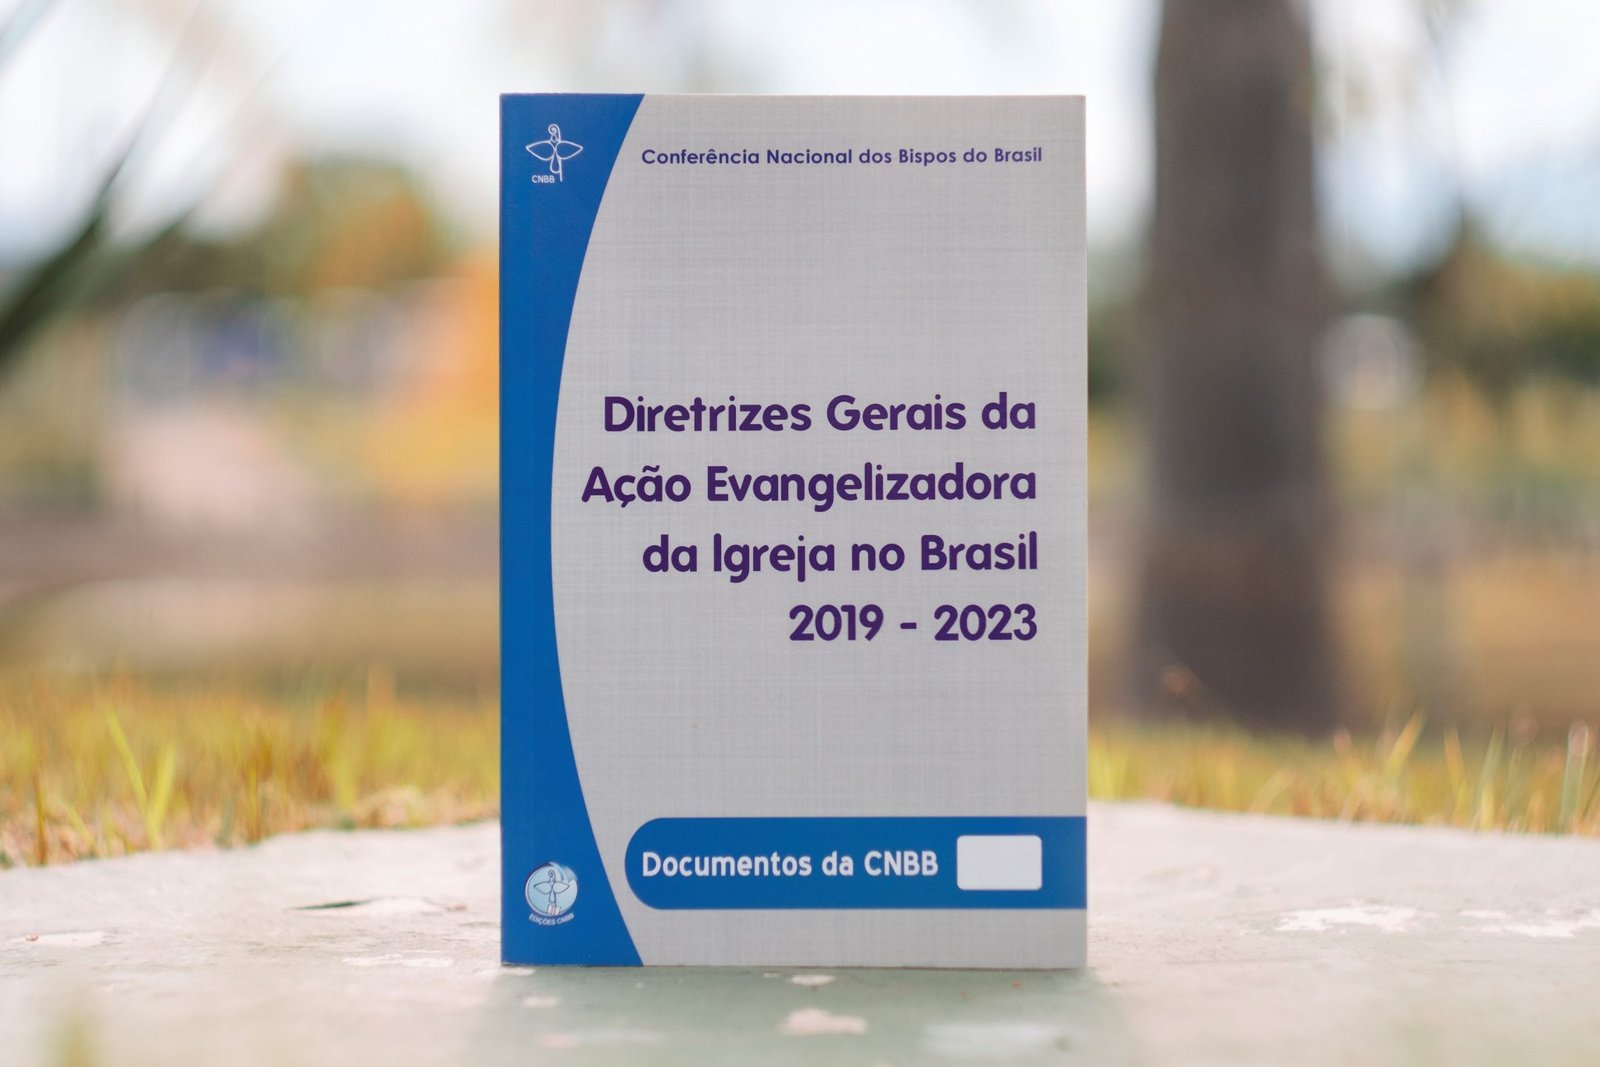 Novas diretrizes da Igreja no Brasil 2019-2023 são aprovadas pelo episcopado